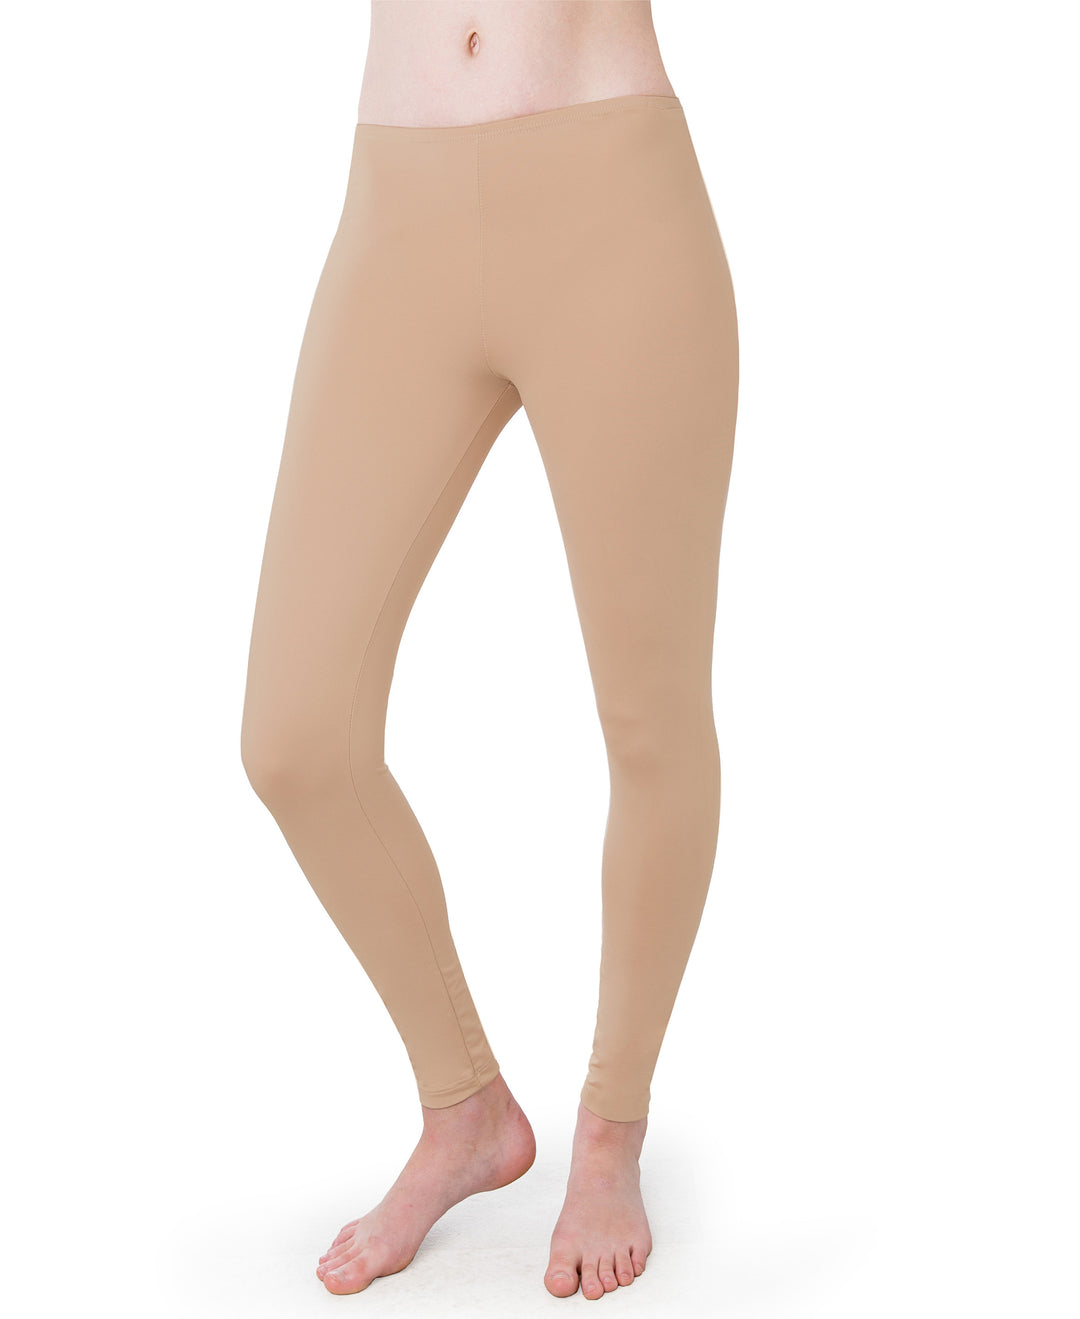 Women Leggings Thermal Bottoms - Buy Women Leggings Thermal